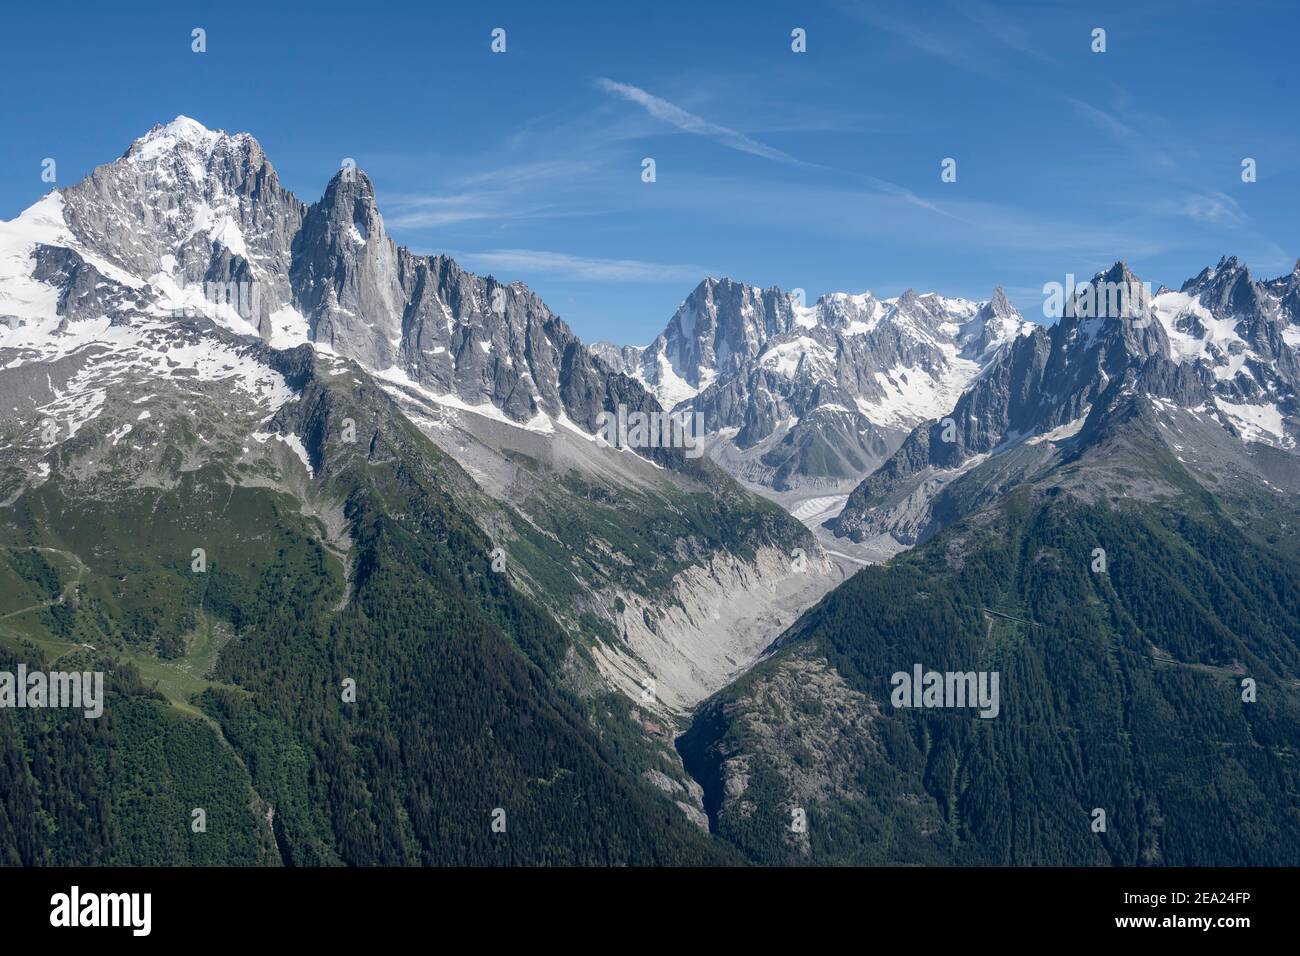 Valle glaciale Mer de Glace, Grand Balcon North, Aiguille Verte, Grandes Jorasses, massiccio del Monte Bianco, Chamonix-Mont-Blanc, alta Savoia, Francia Foto Stock